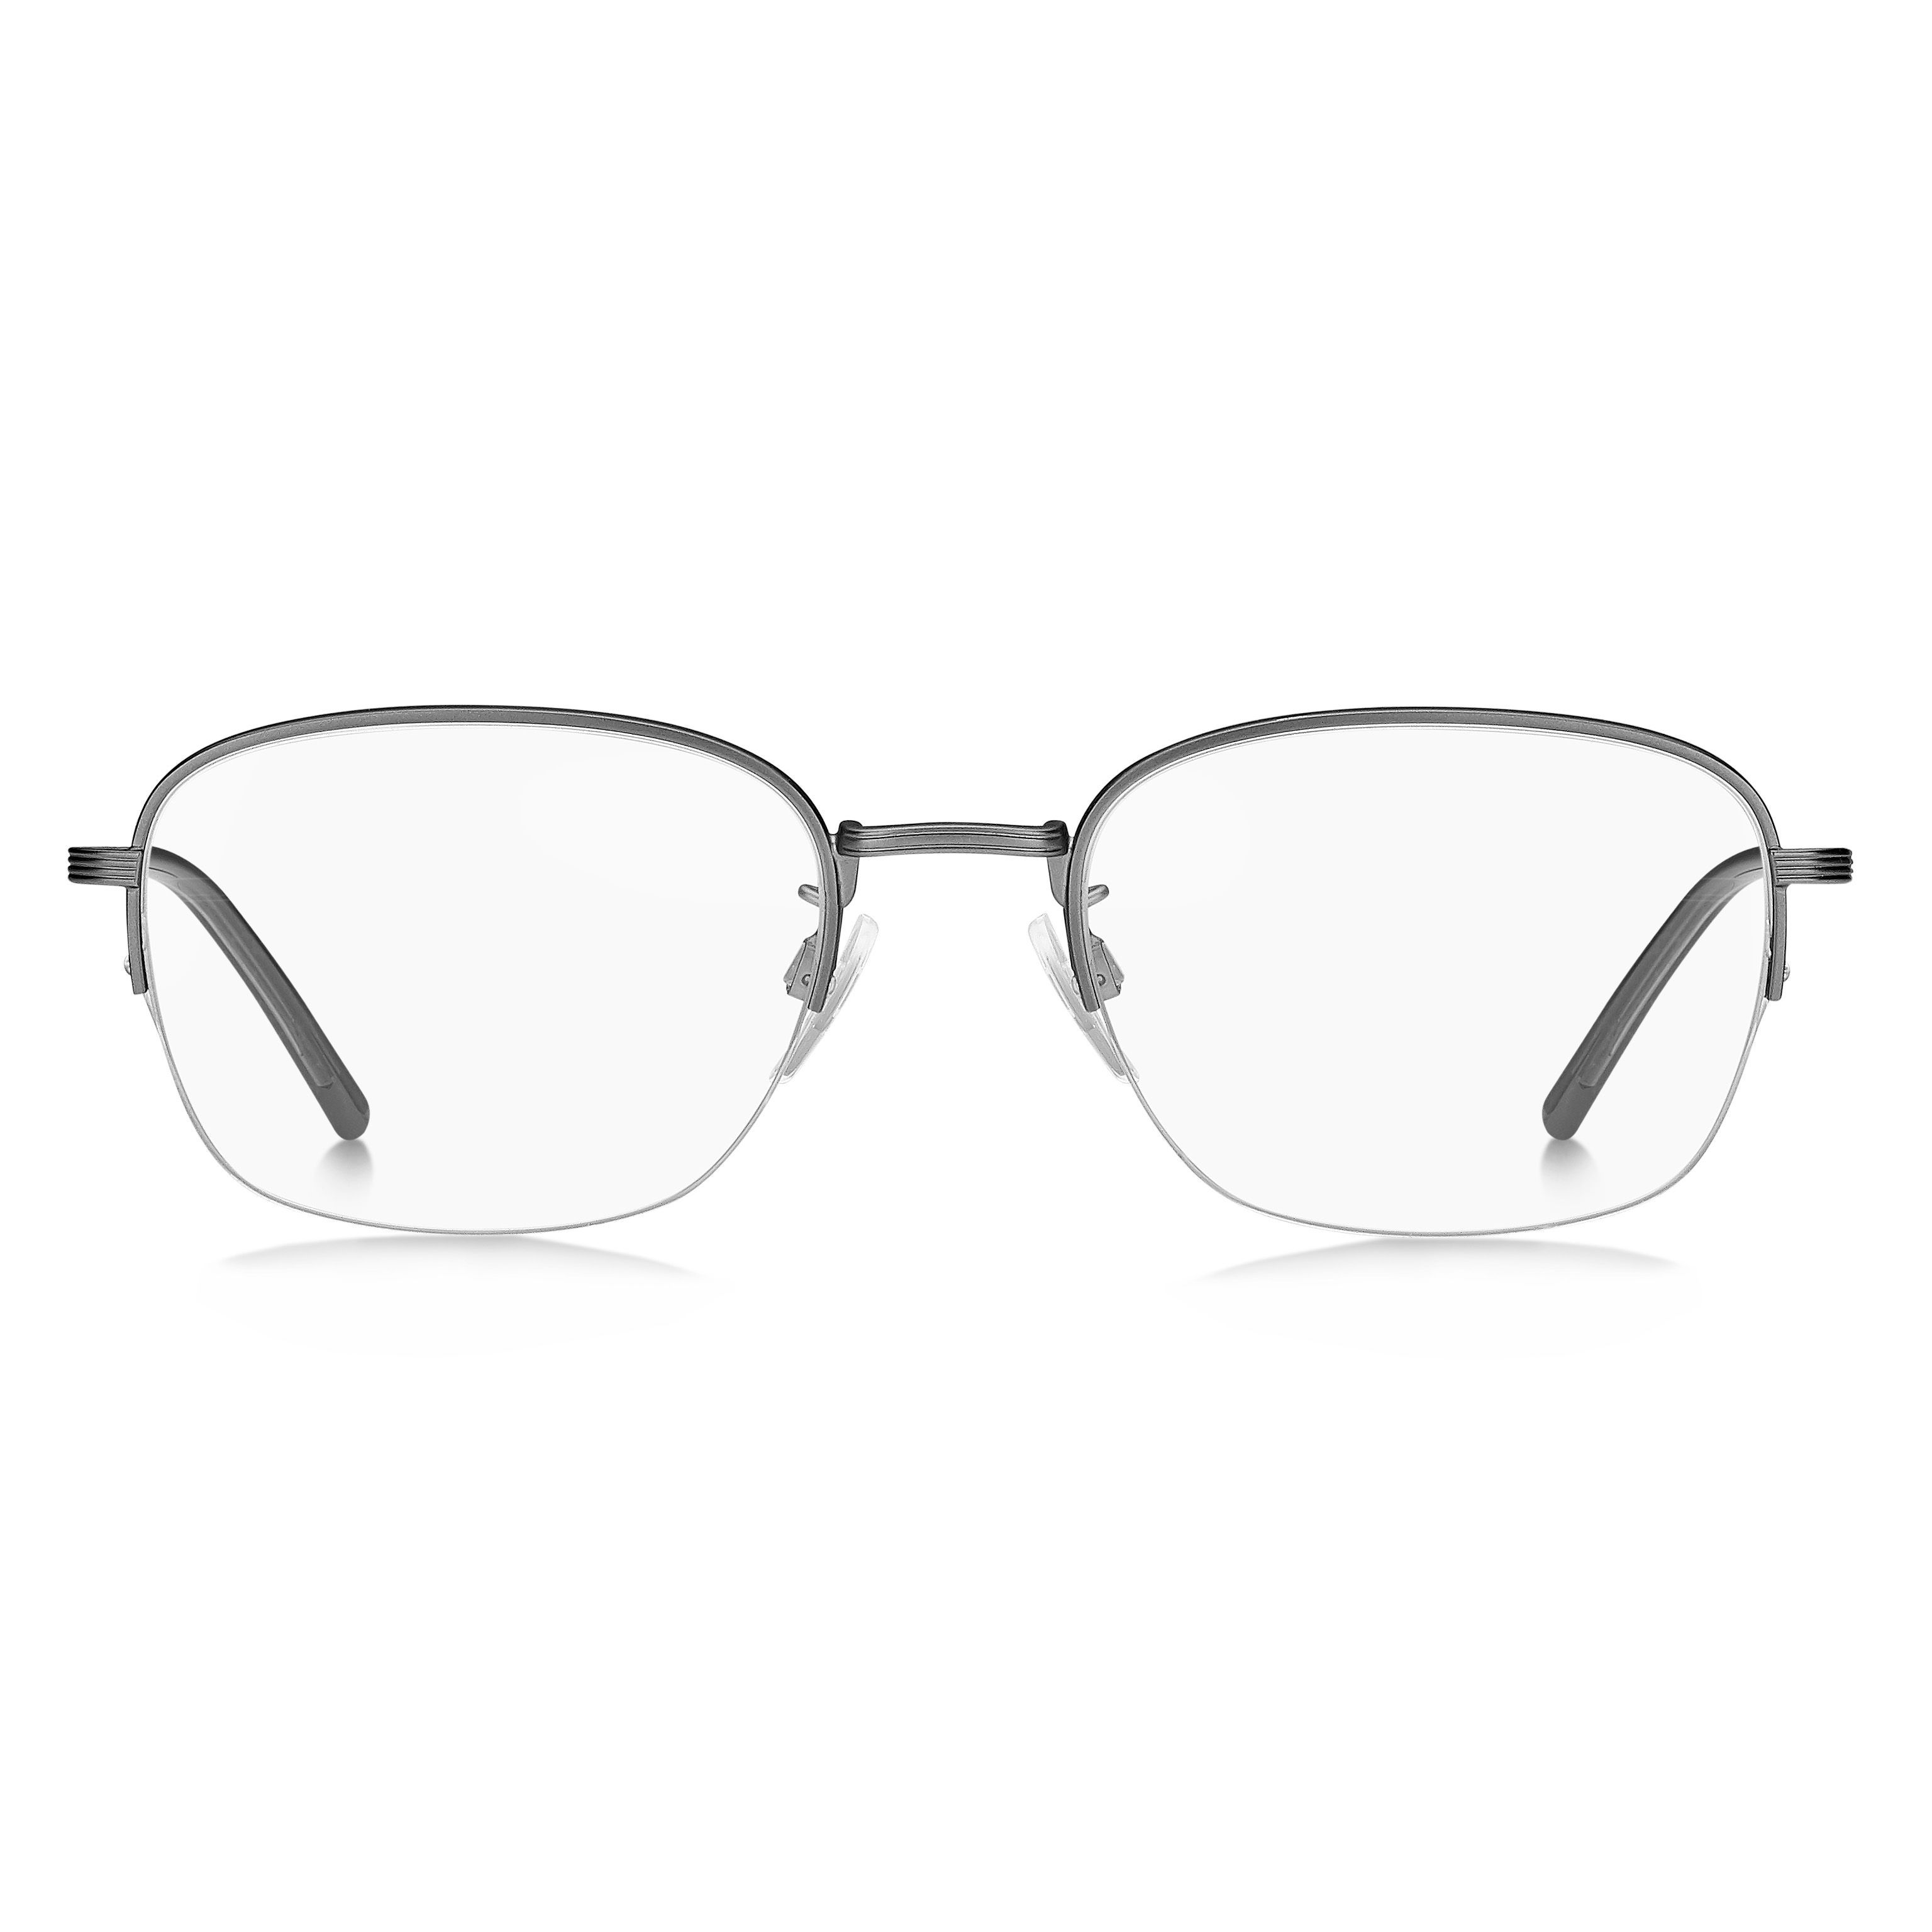 TH 2012 F Square Eyeglasses R81 - size 54